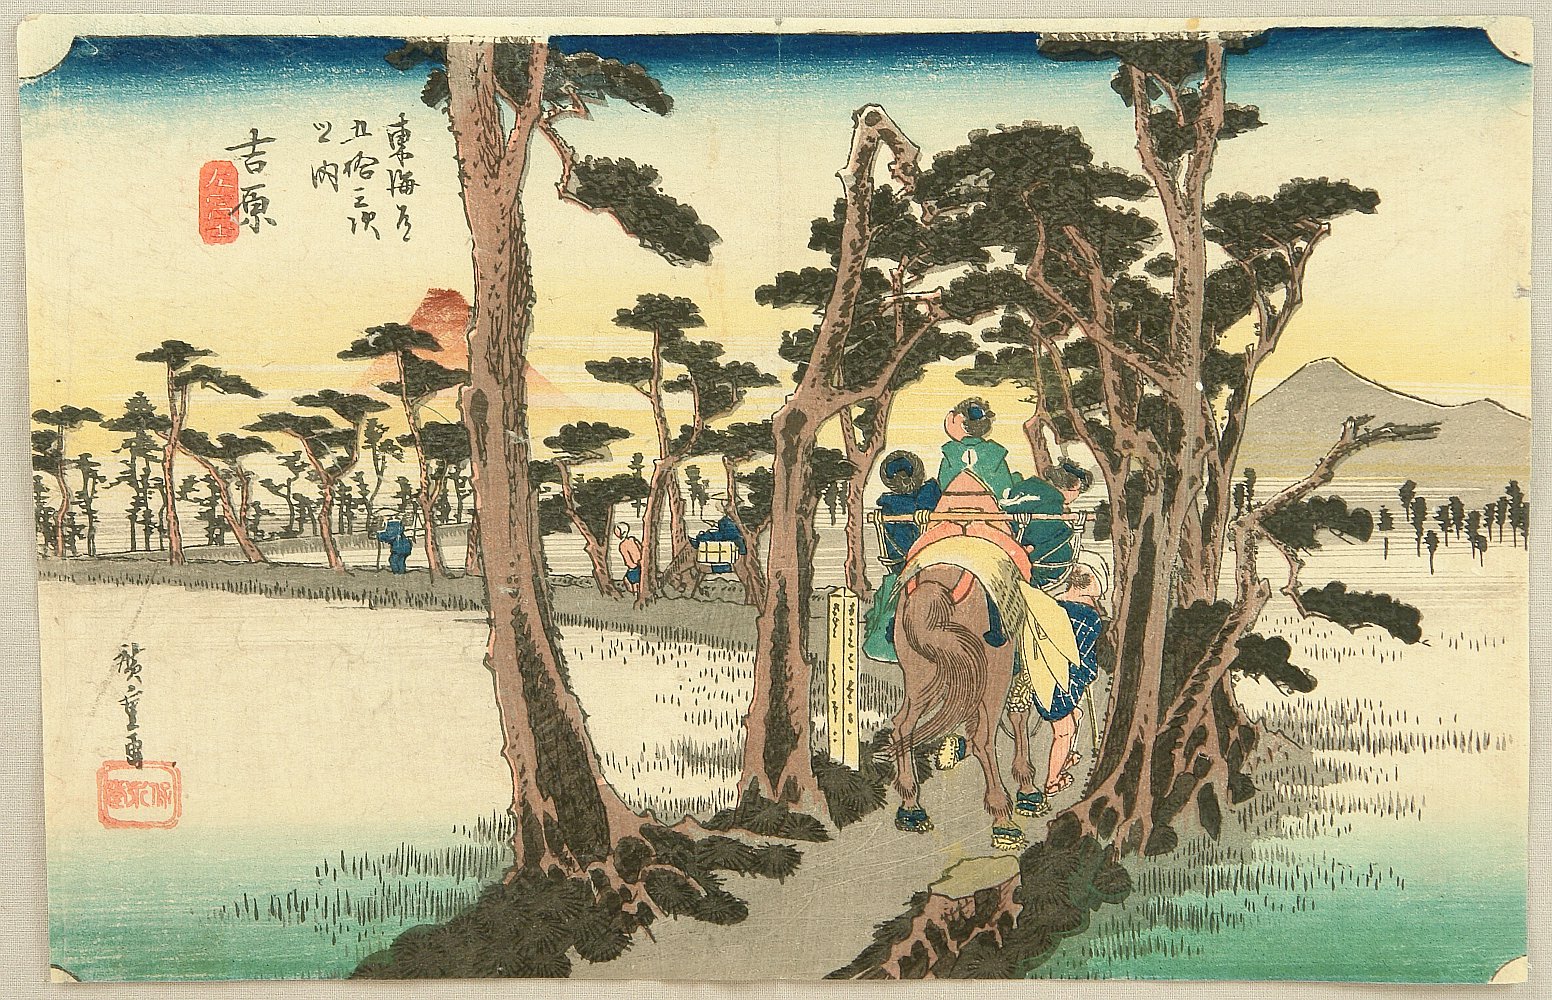 Utagawa Hiroshige: 53 Stations of the Tokaido (Hoeido) - Yoshiwara 